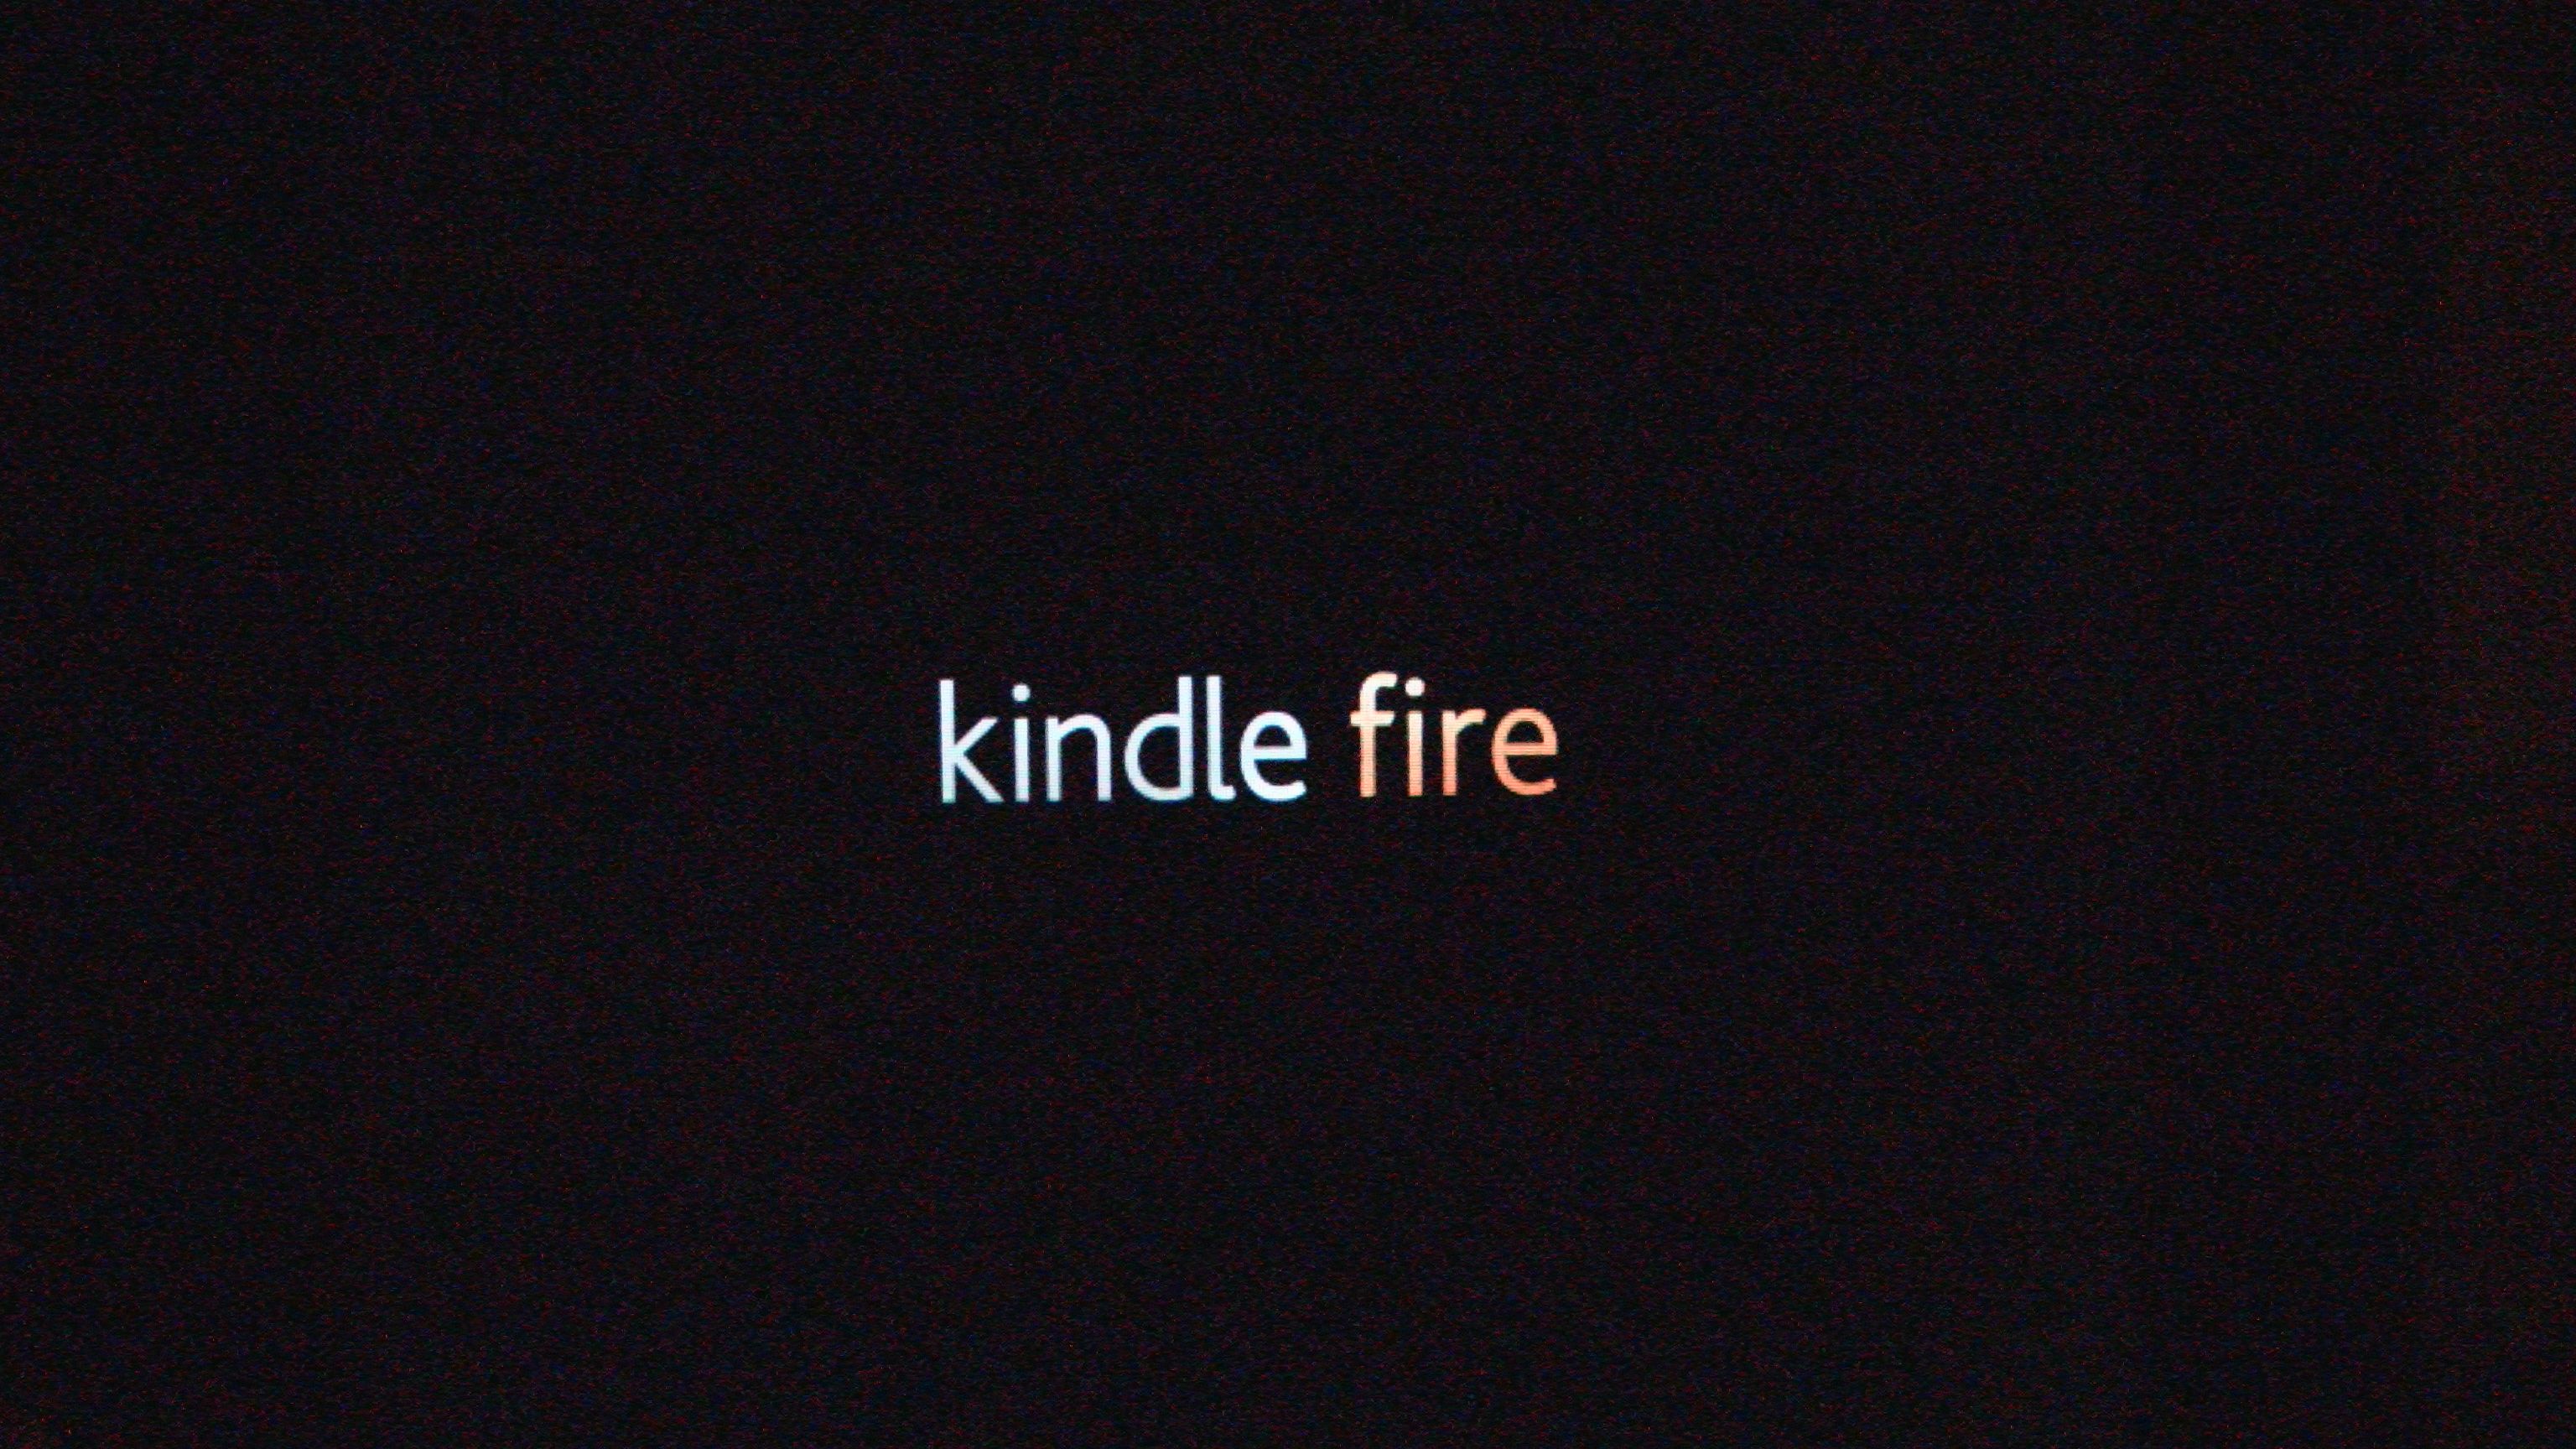 Fonds d'écran Kindle Fire : tous les wallpapers Kindle Fire